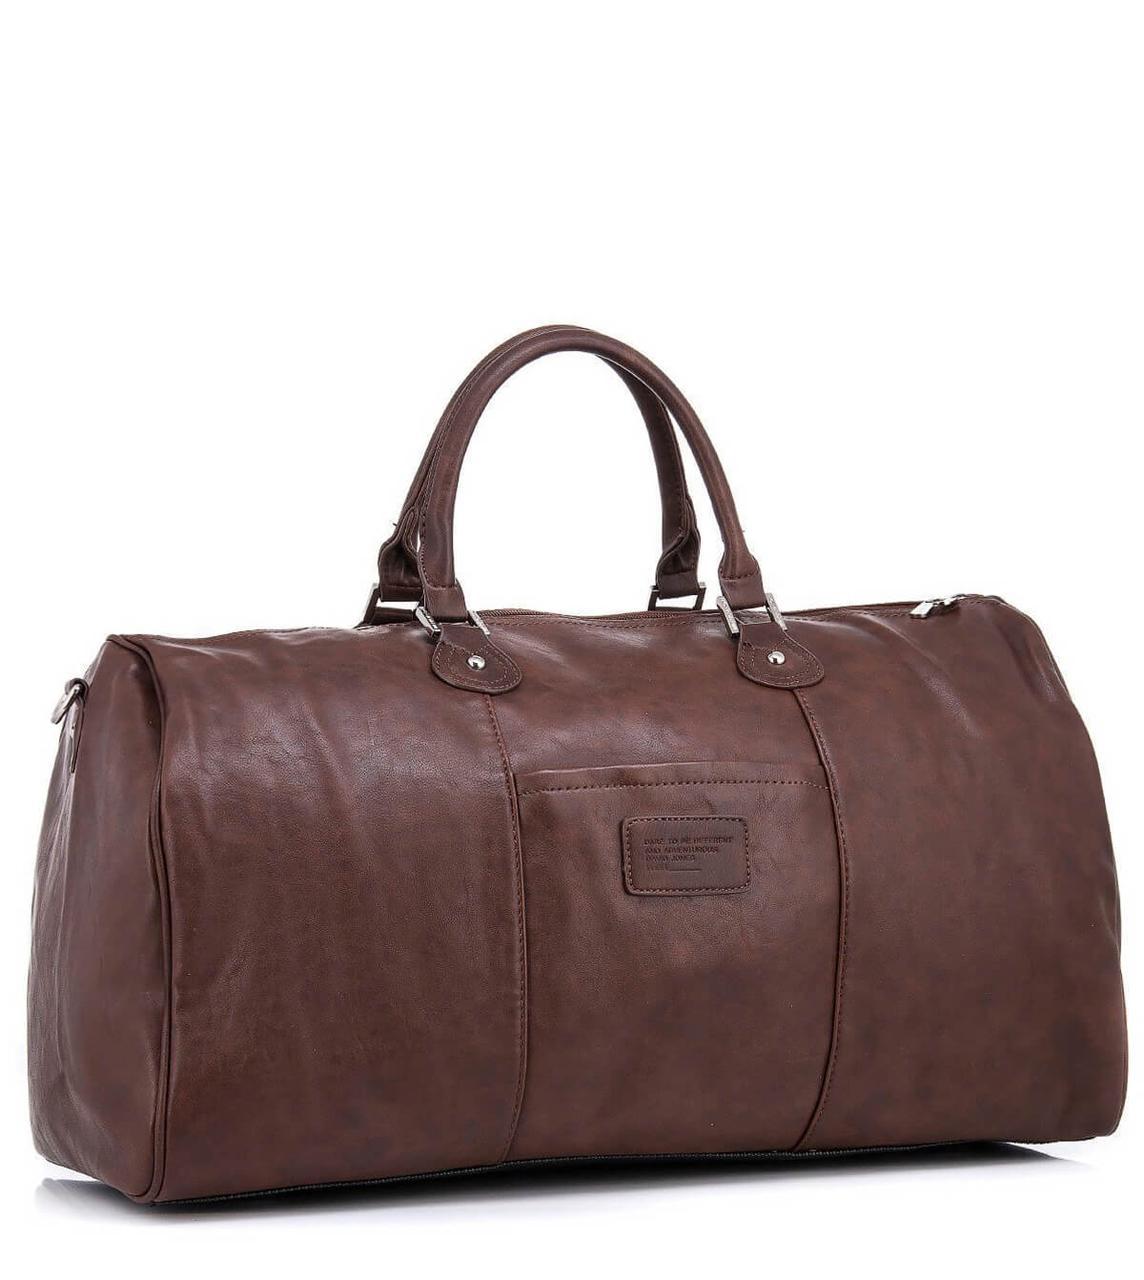 

Дорожная сумка саквояж коричневый David Jones DJ-103993 для ручной клади